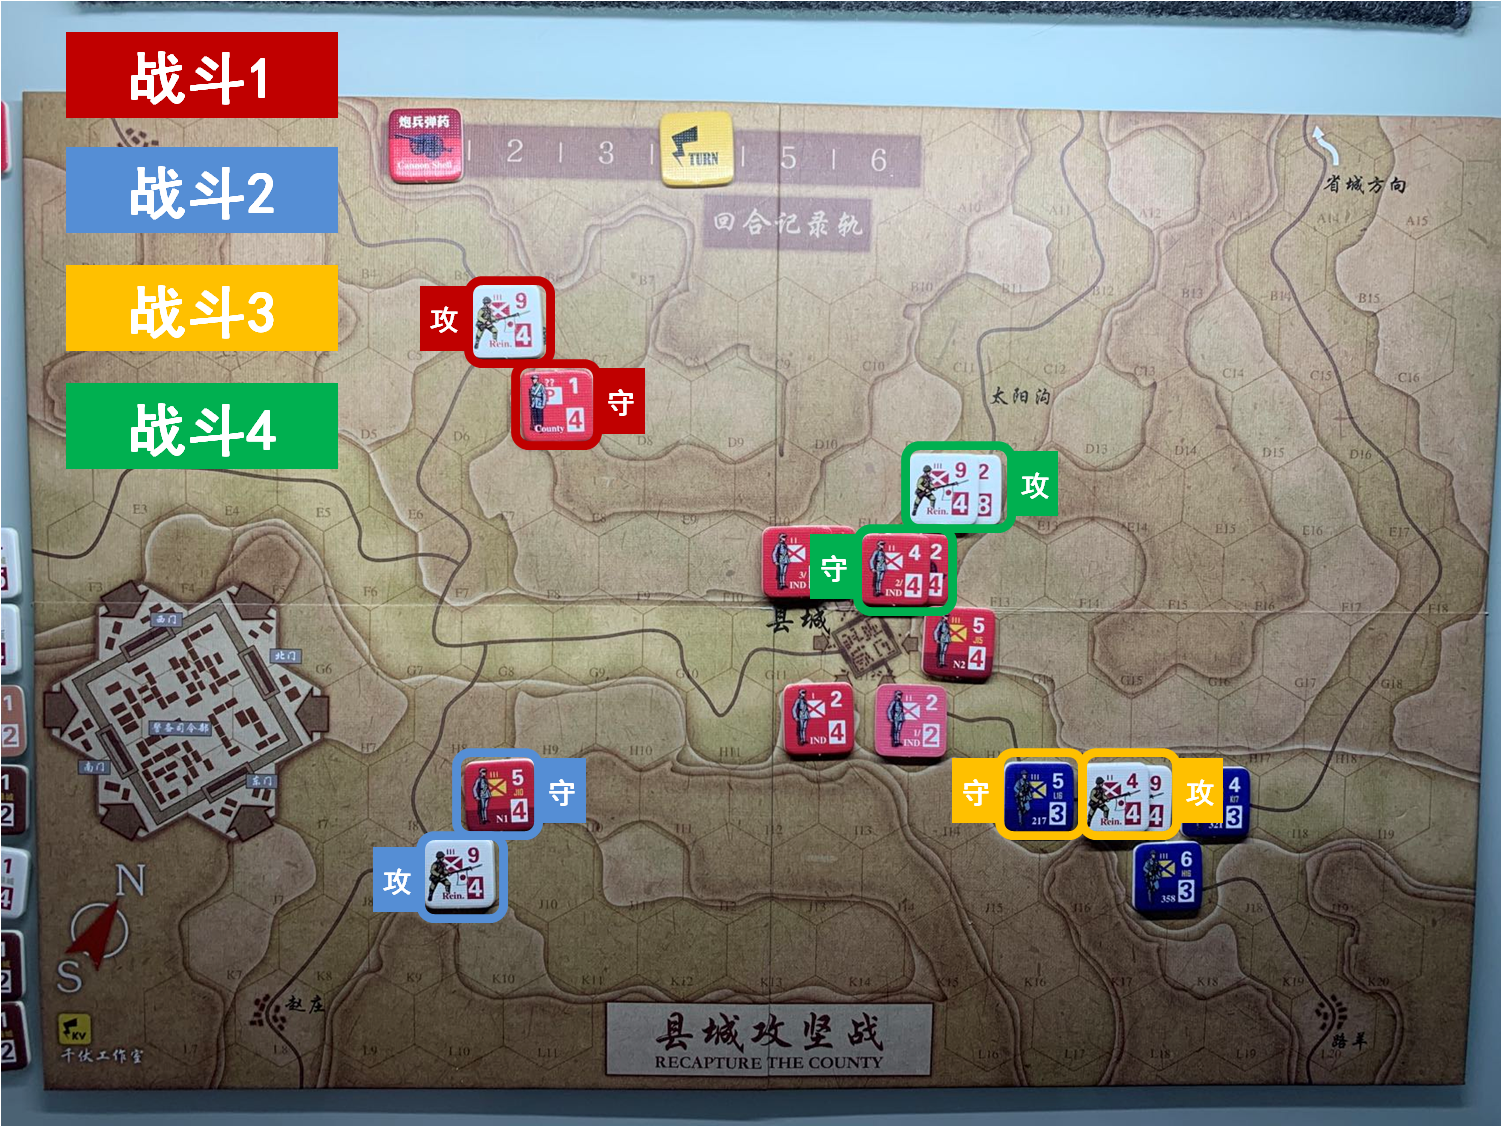 第四回合 日方战斗阶段 战斗计划